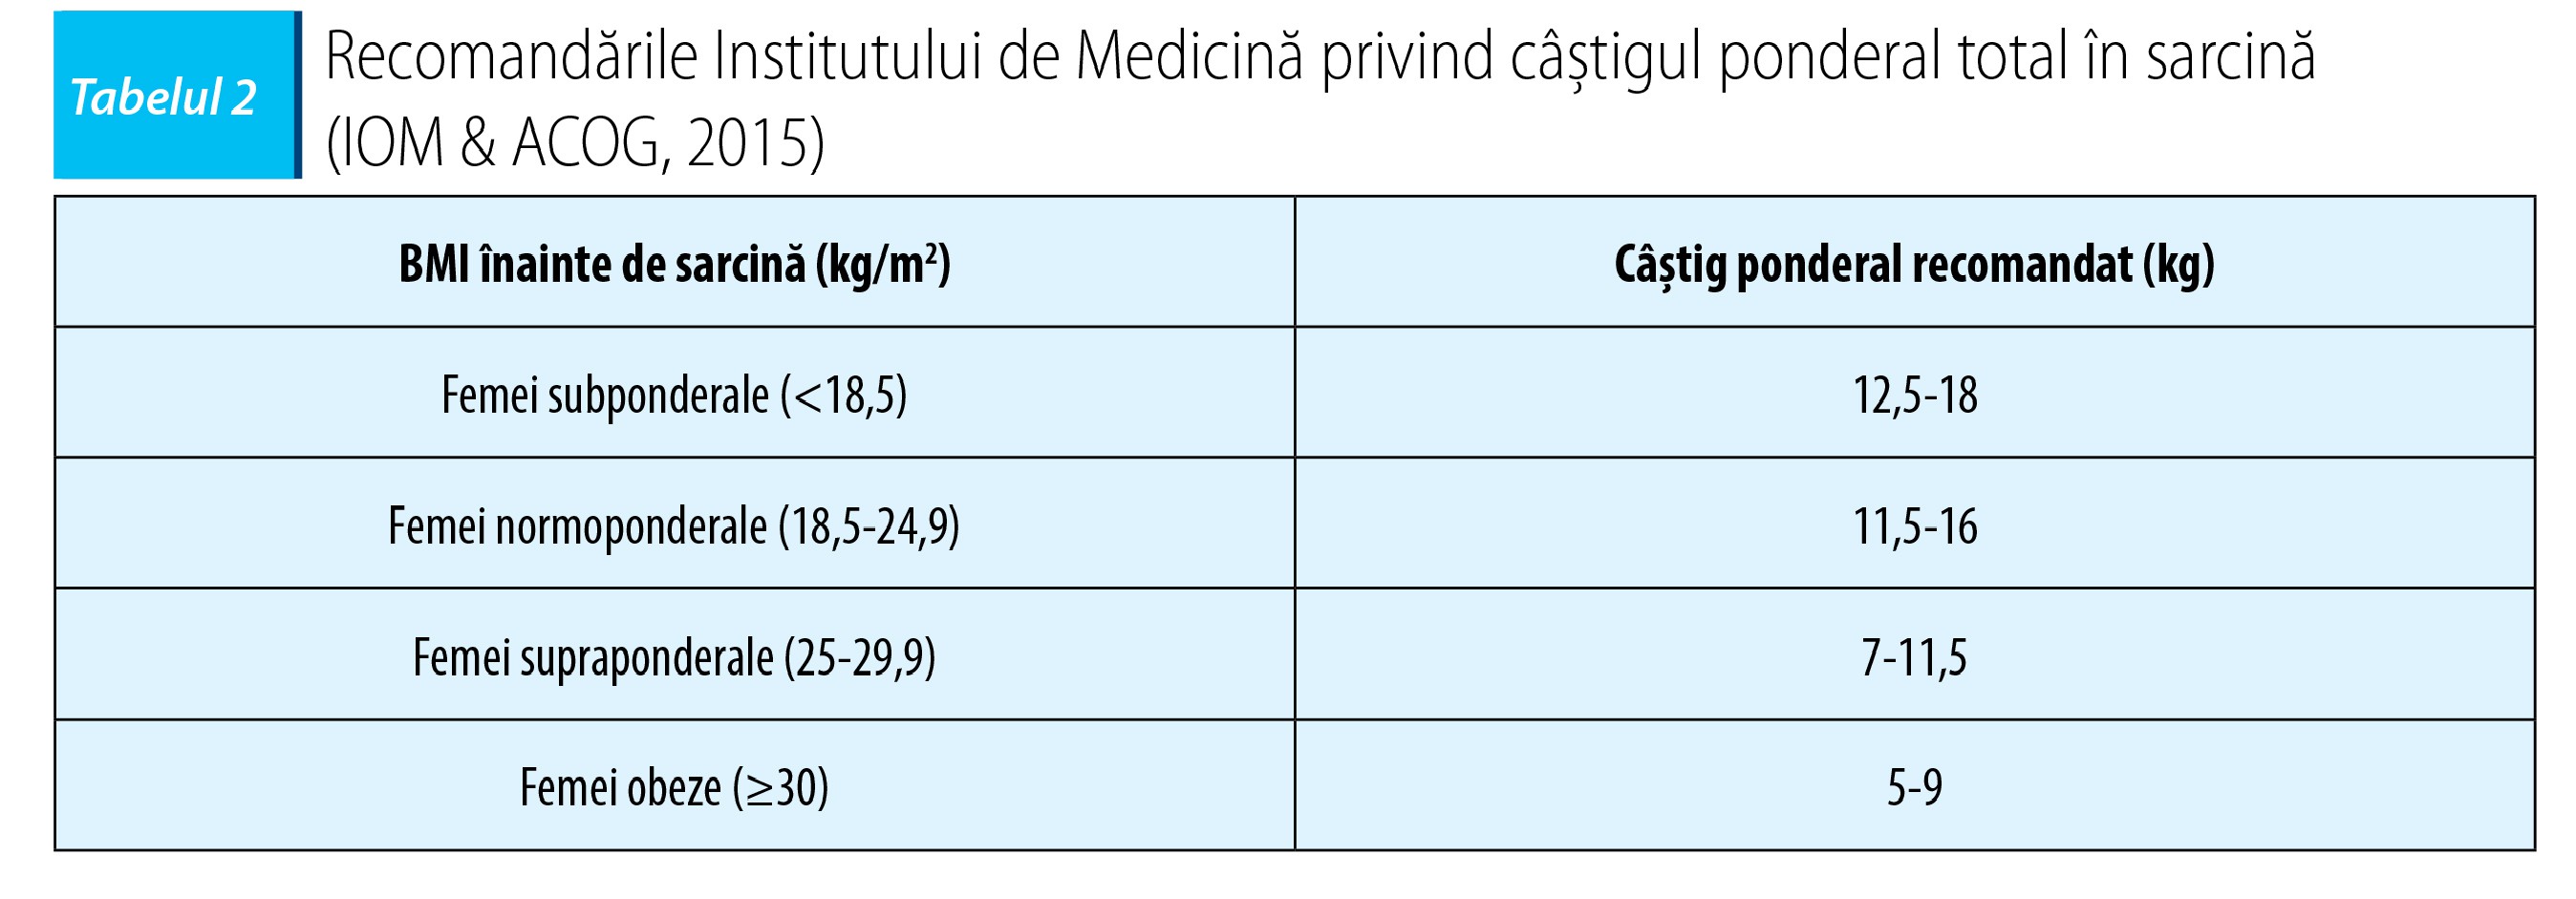 Tabelul 2. Recomandările Institutului de Medicină privind câştigul ponderal total în sarcină  (IOM & ACOG, 2015)